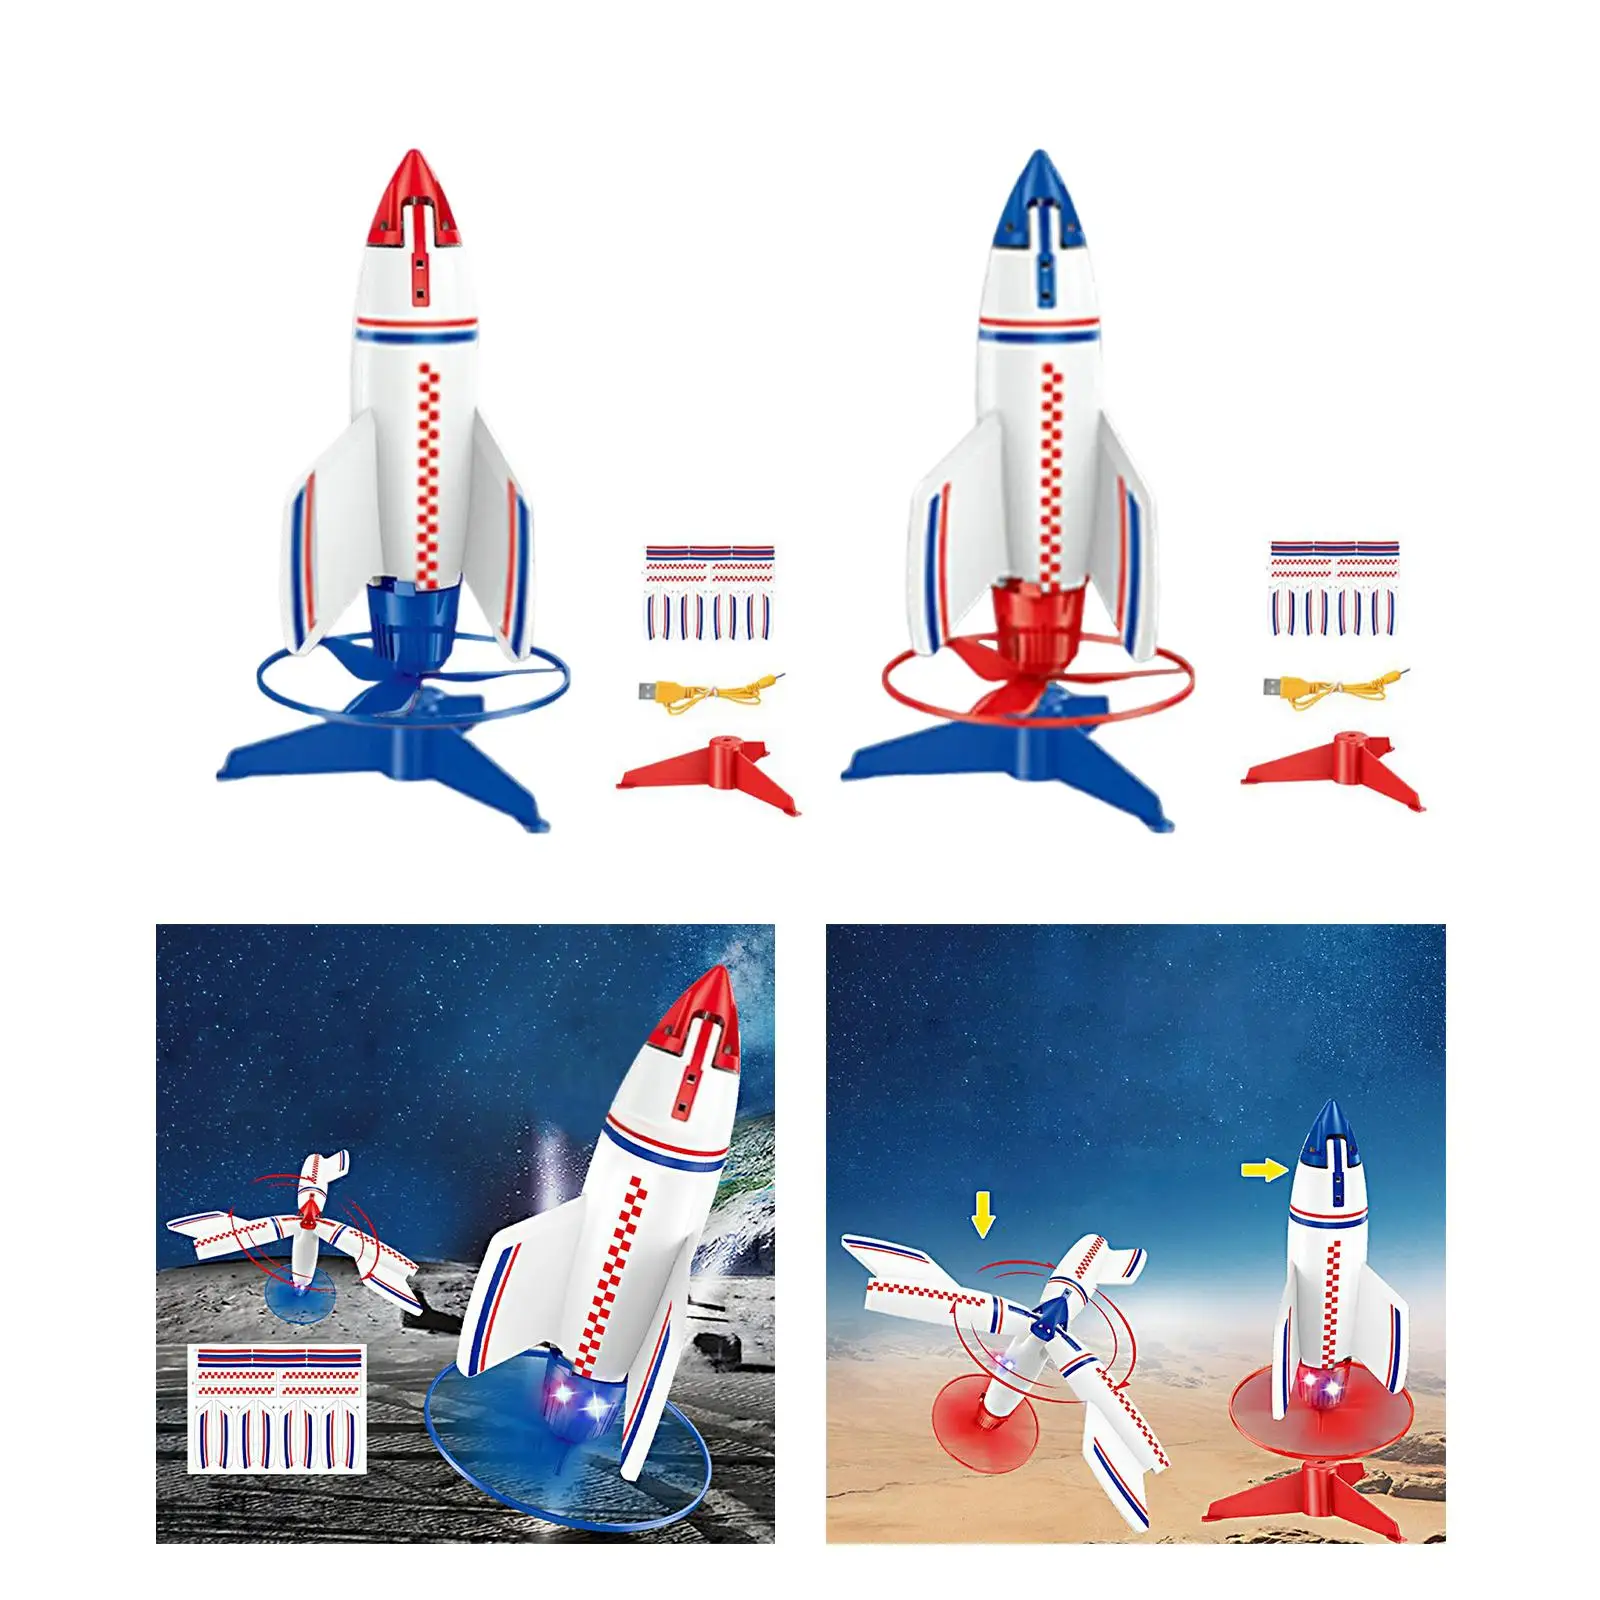 rocket Launcher toys Outdoor Toy Foam Rockets Games Activities